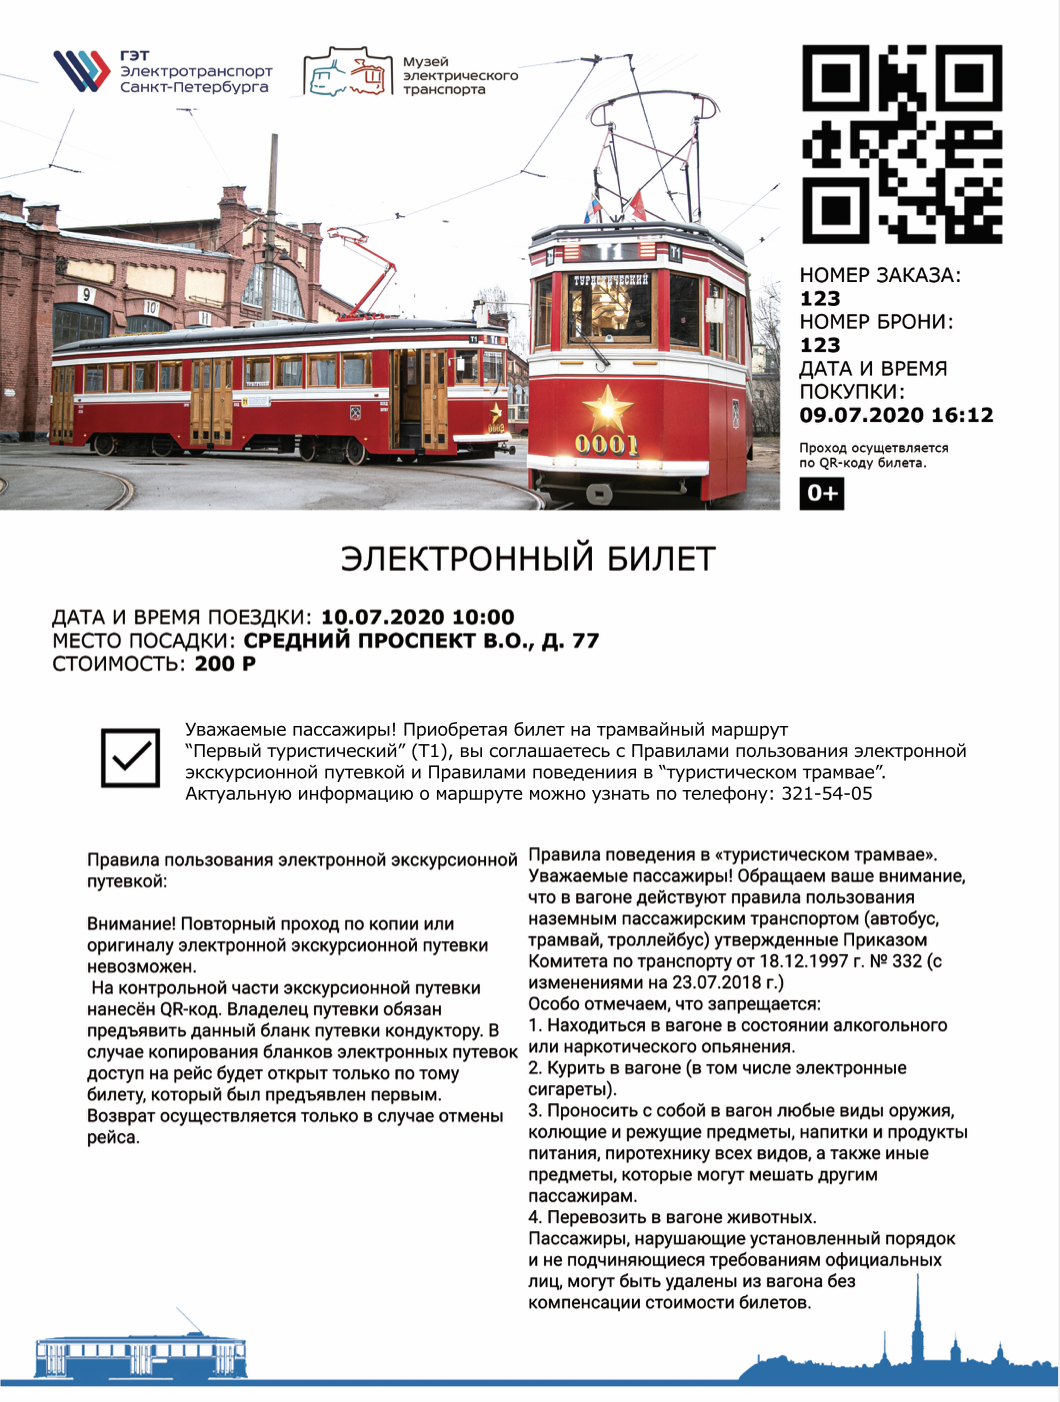 Почему наша компания с особым интересом наблюдает за экскурсиями, проводимыми в Санкт-Петербурге на легендарном трамвае